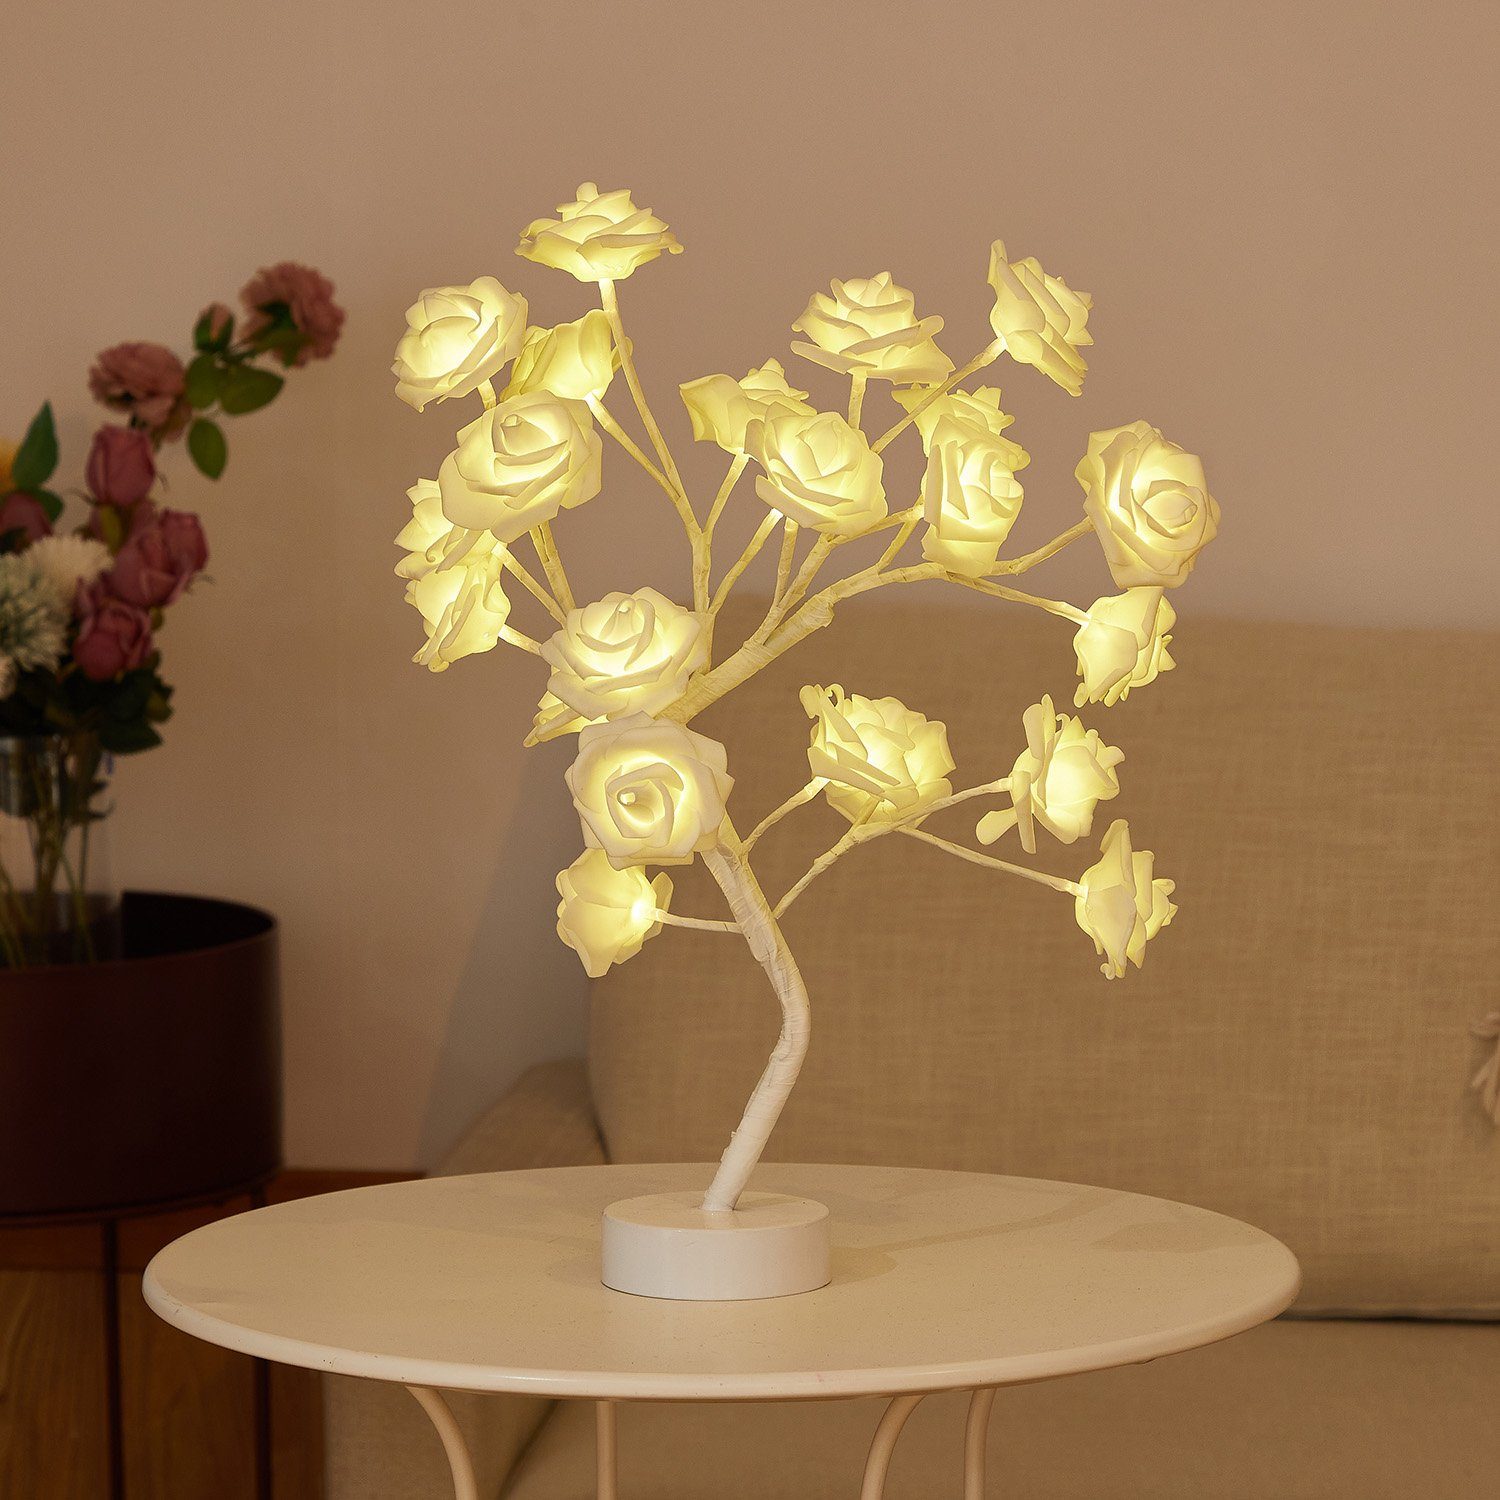 Rosnek LED Tischleuchte LED Tisch-Bonsai-Baum Nachtlicht, Künstliche Rose Blume, Warmweiß, Home Hochzeit Party Dekor,Valentinstag Geschenk